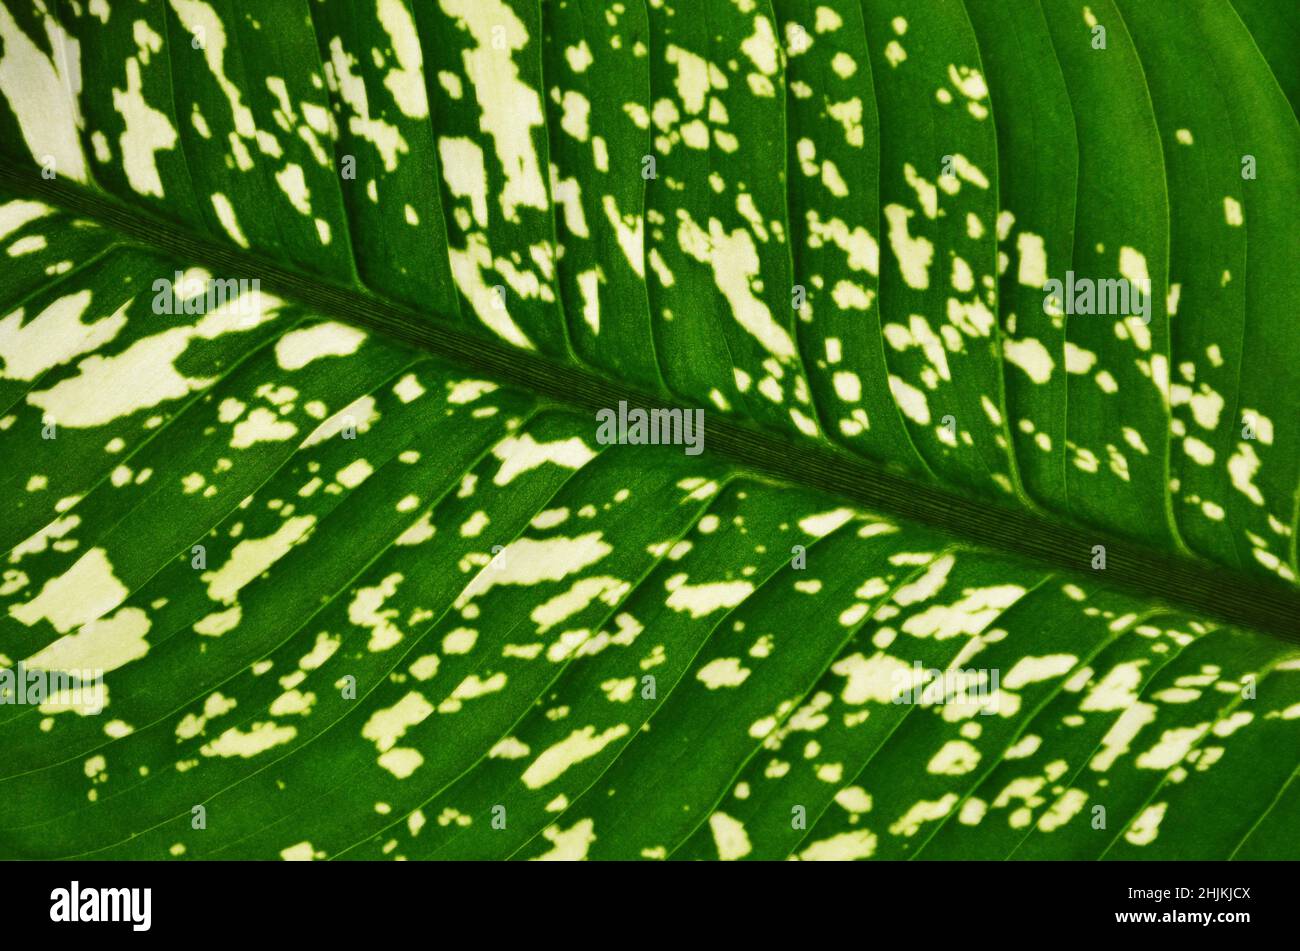 Fragment eines Dieffenbachia-Blattes als grüner abstrakter Hintergrund. Grünes Blatt mit hellen Flecken und Flecken. Stockfoto